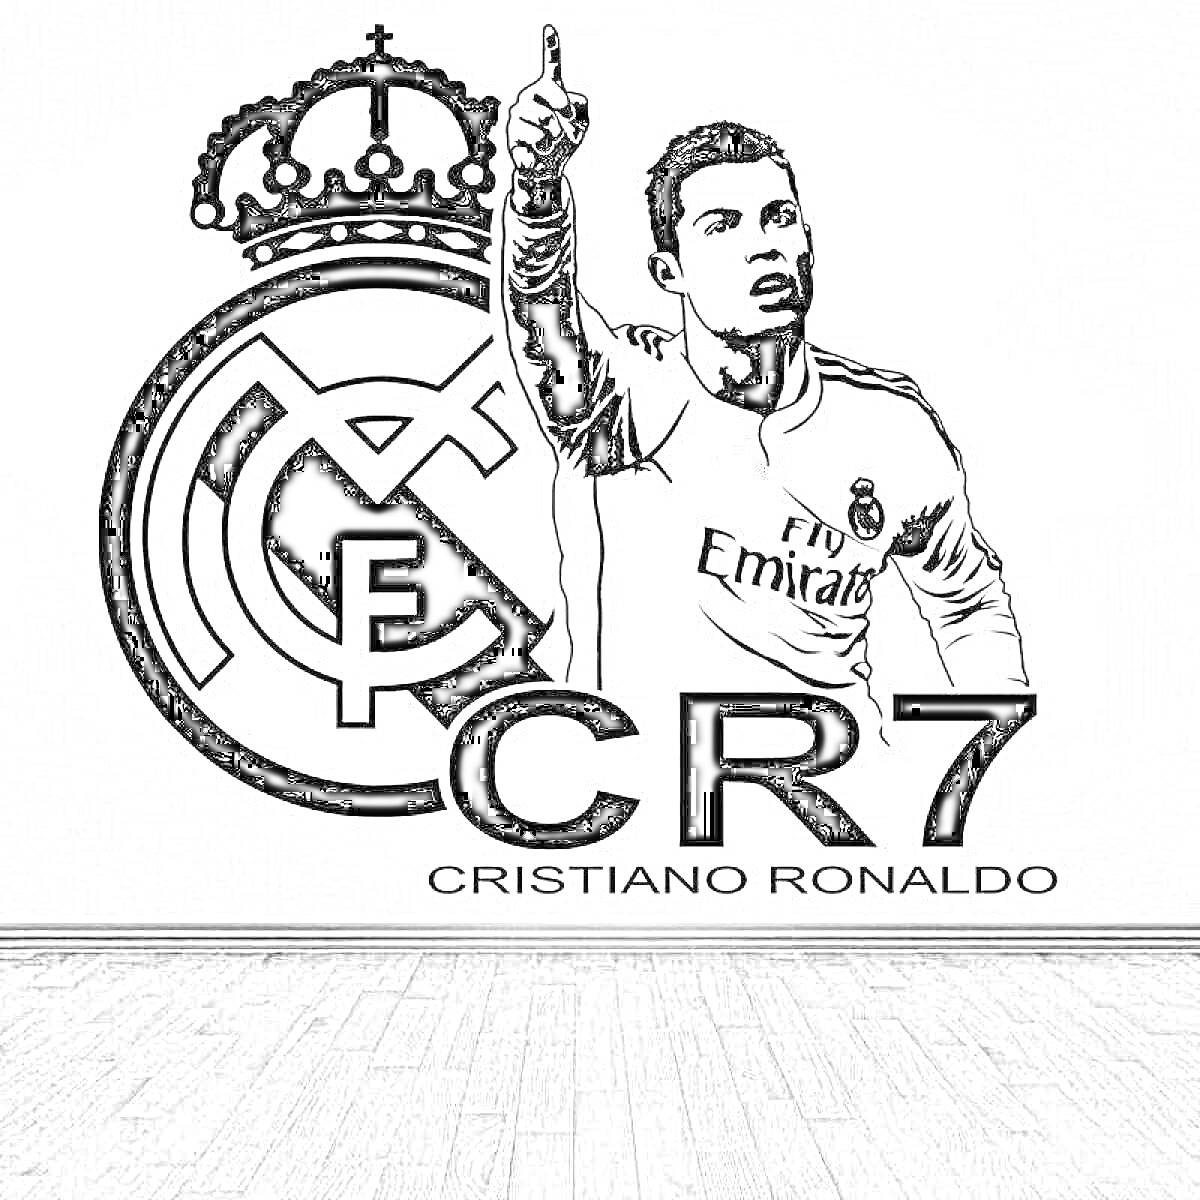 Логотип Реал Мадрид, изображение футболиста в форме Реал Мадрид, надпись CR7, надпись Cristiano Ronaldo